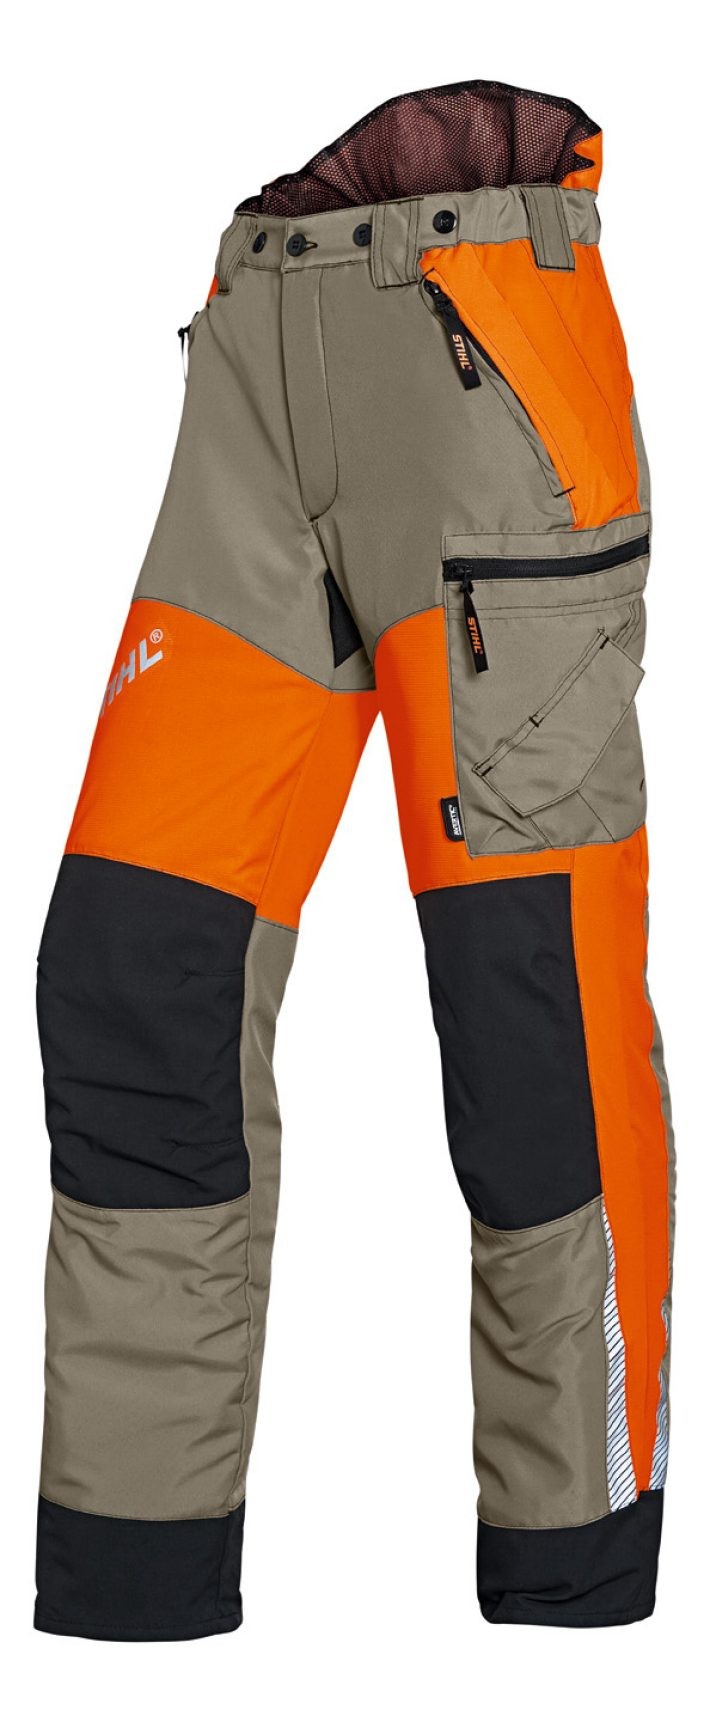 Pantalon pour le travail en forêt avec protection contre les coupures.